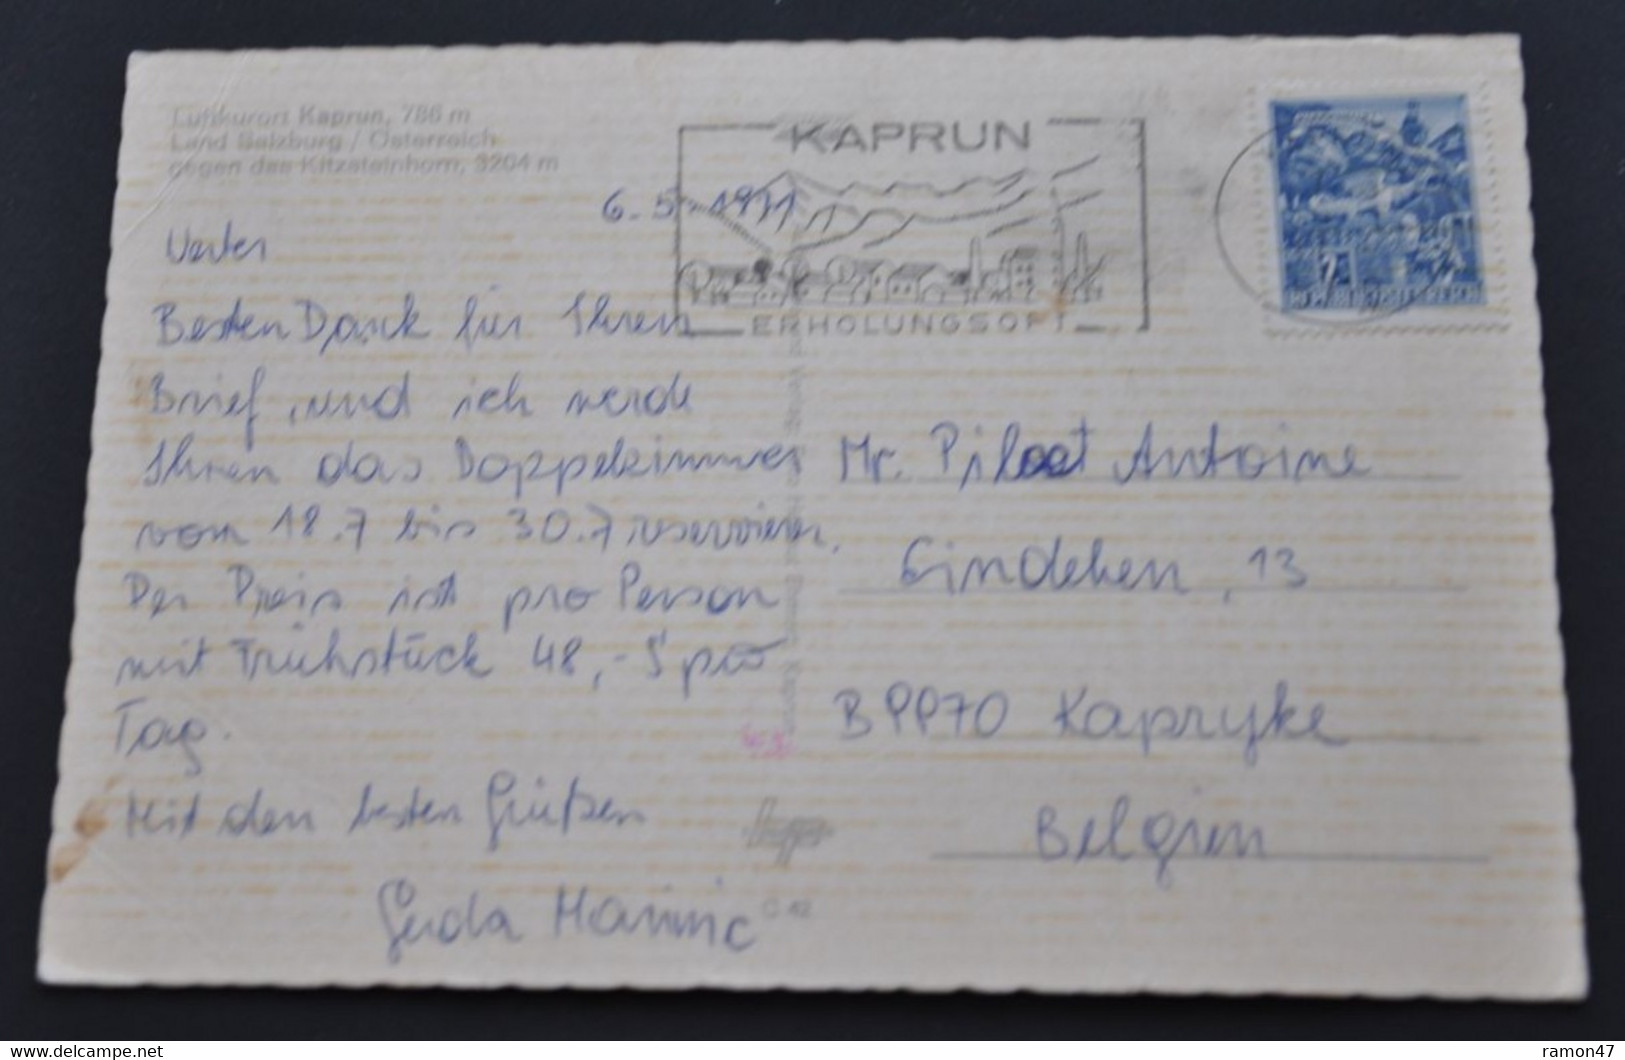 Kaprun - Luftkurort Gegen Das Kitzsteinhorn - Aufnahme Und Verlag Foto Helmut Ehmert, Kaprun - # C 42 - Kaprun